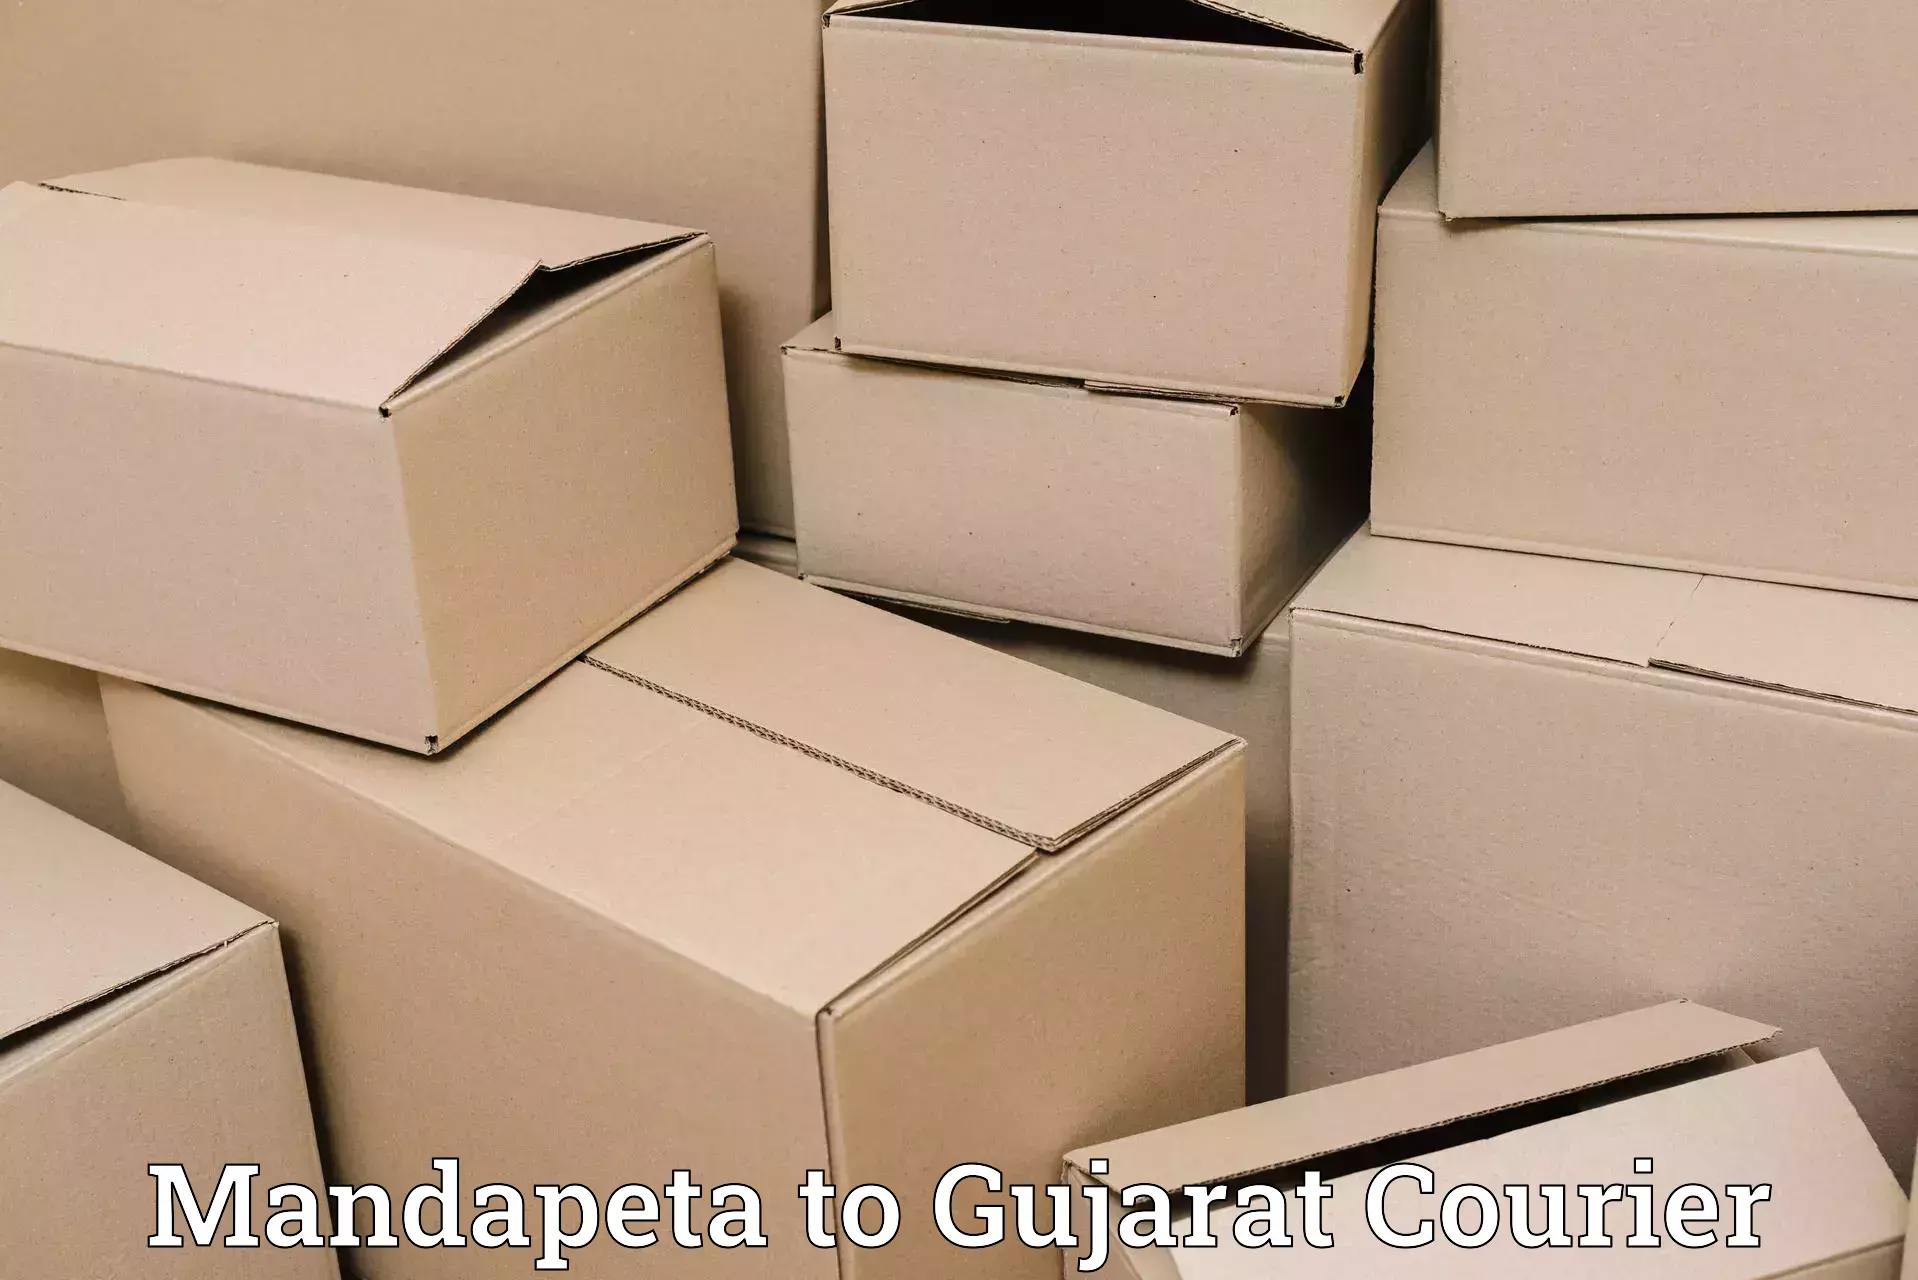 Express logistics service Mandapeta to Jetpur